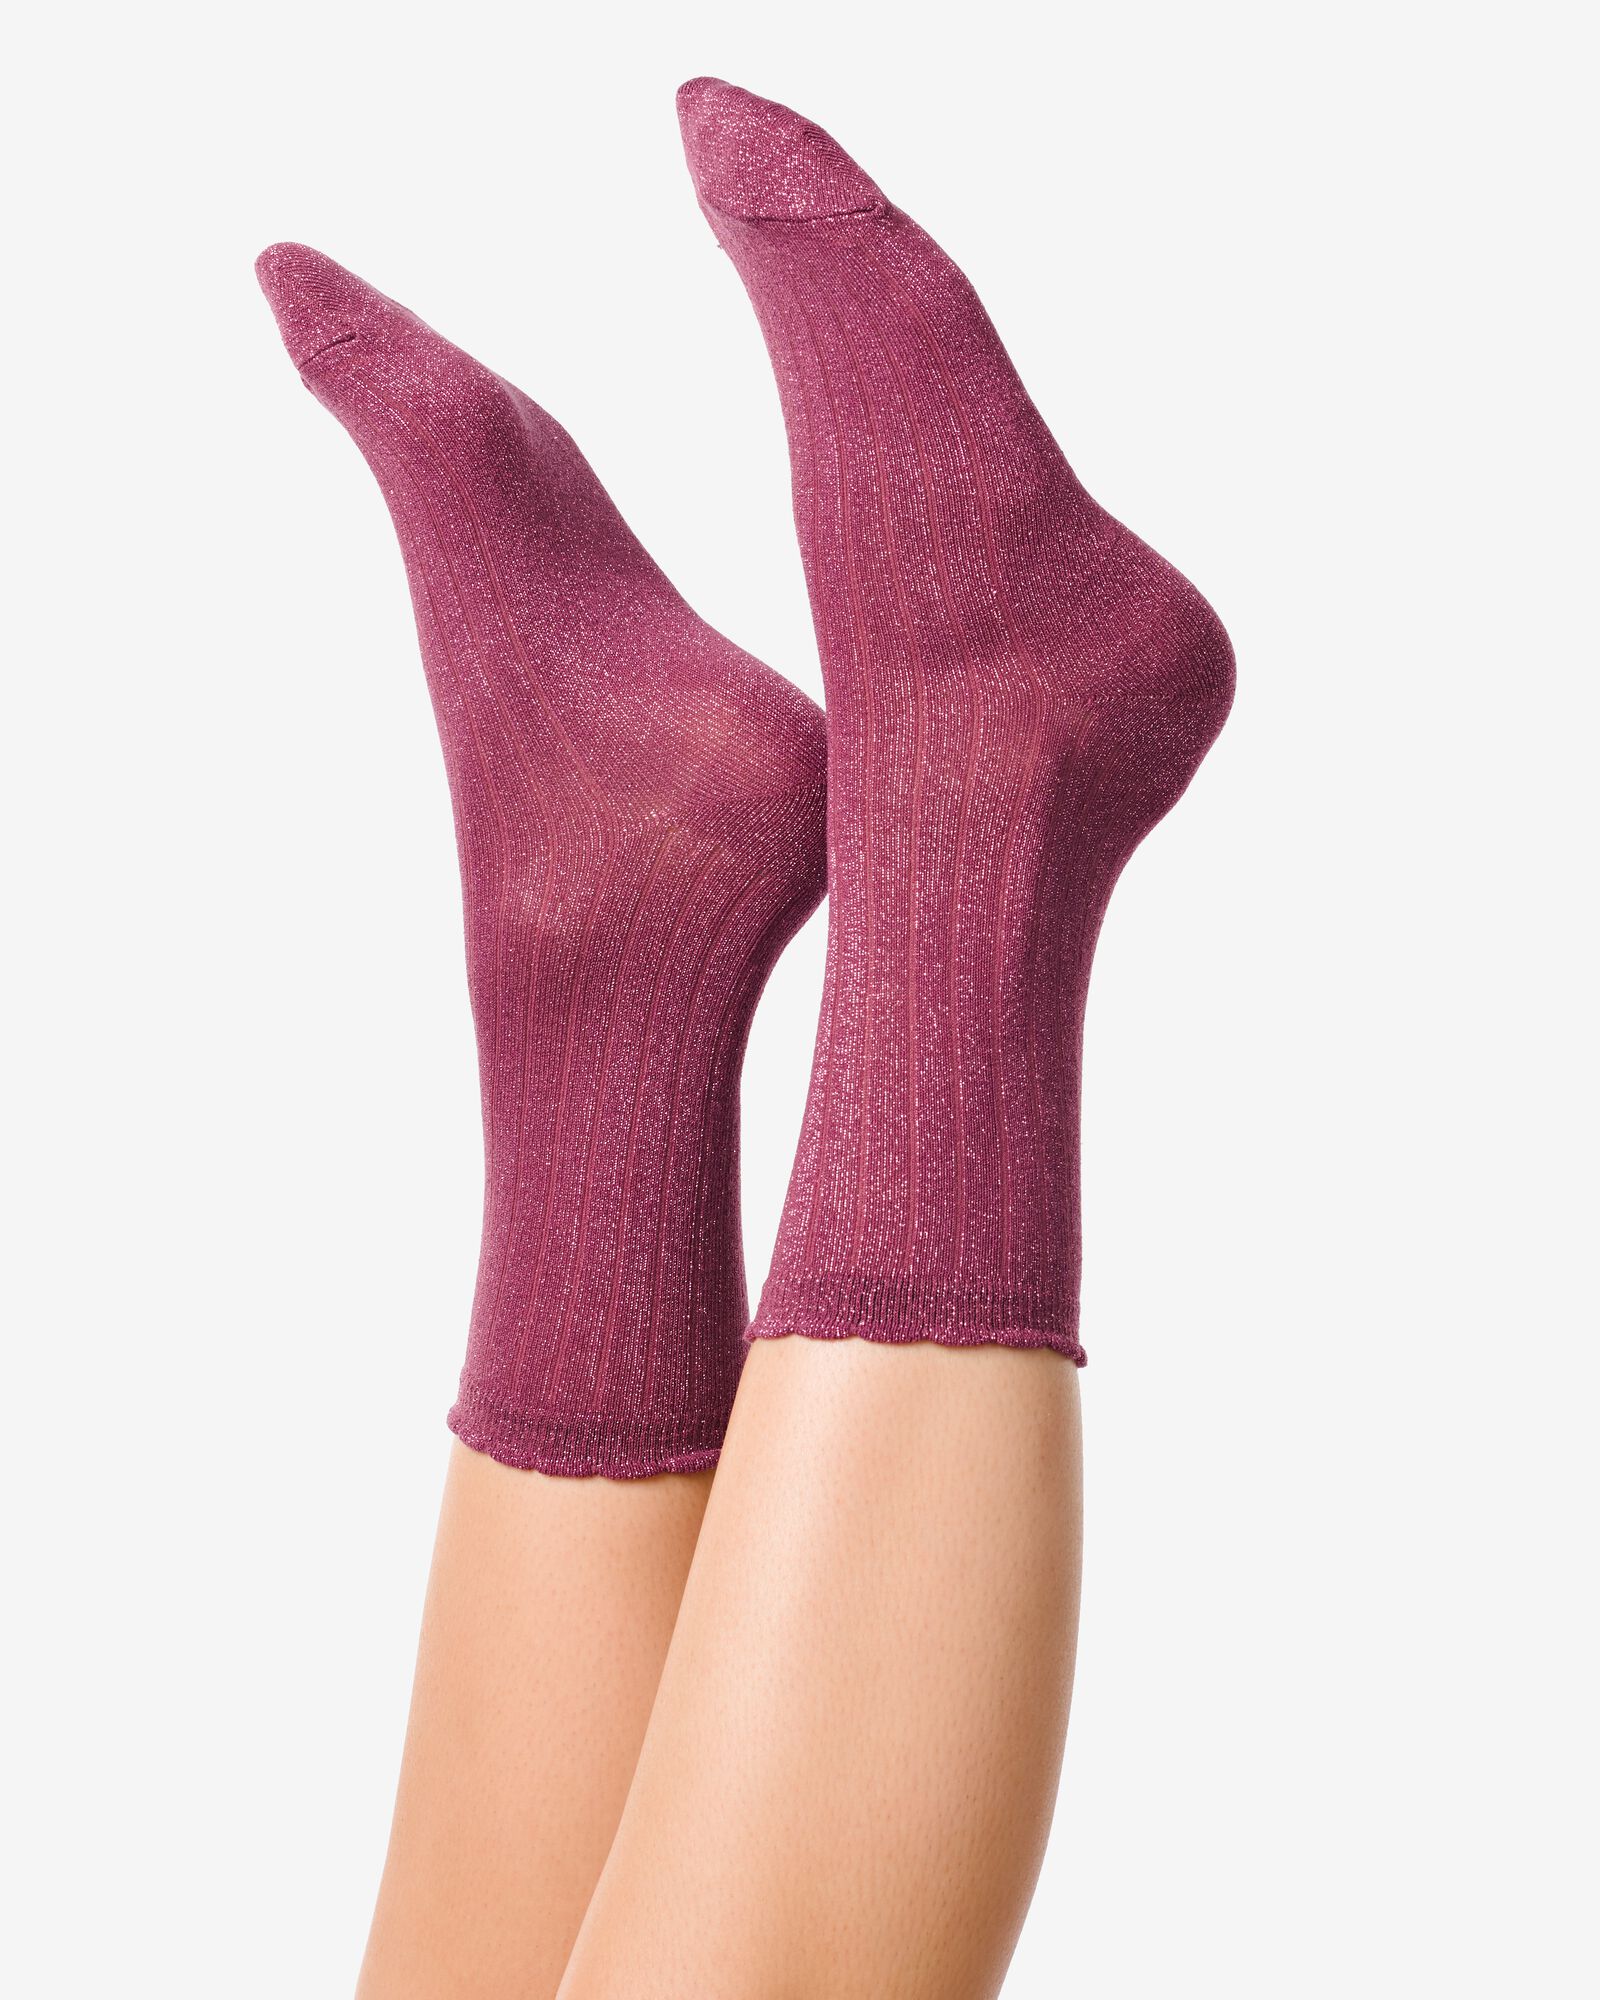 2 paires de chaussettes femme avec modal - HEMA